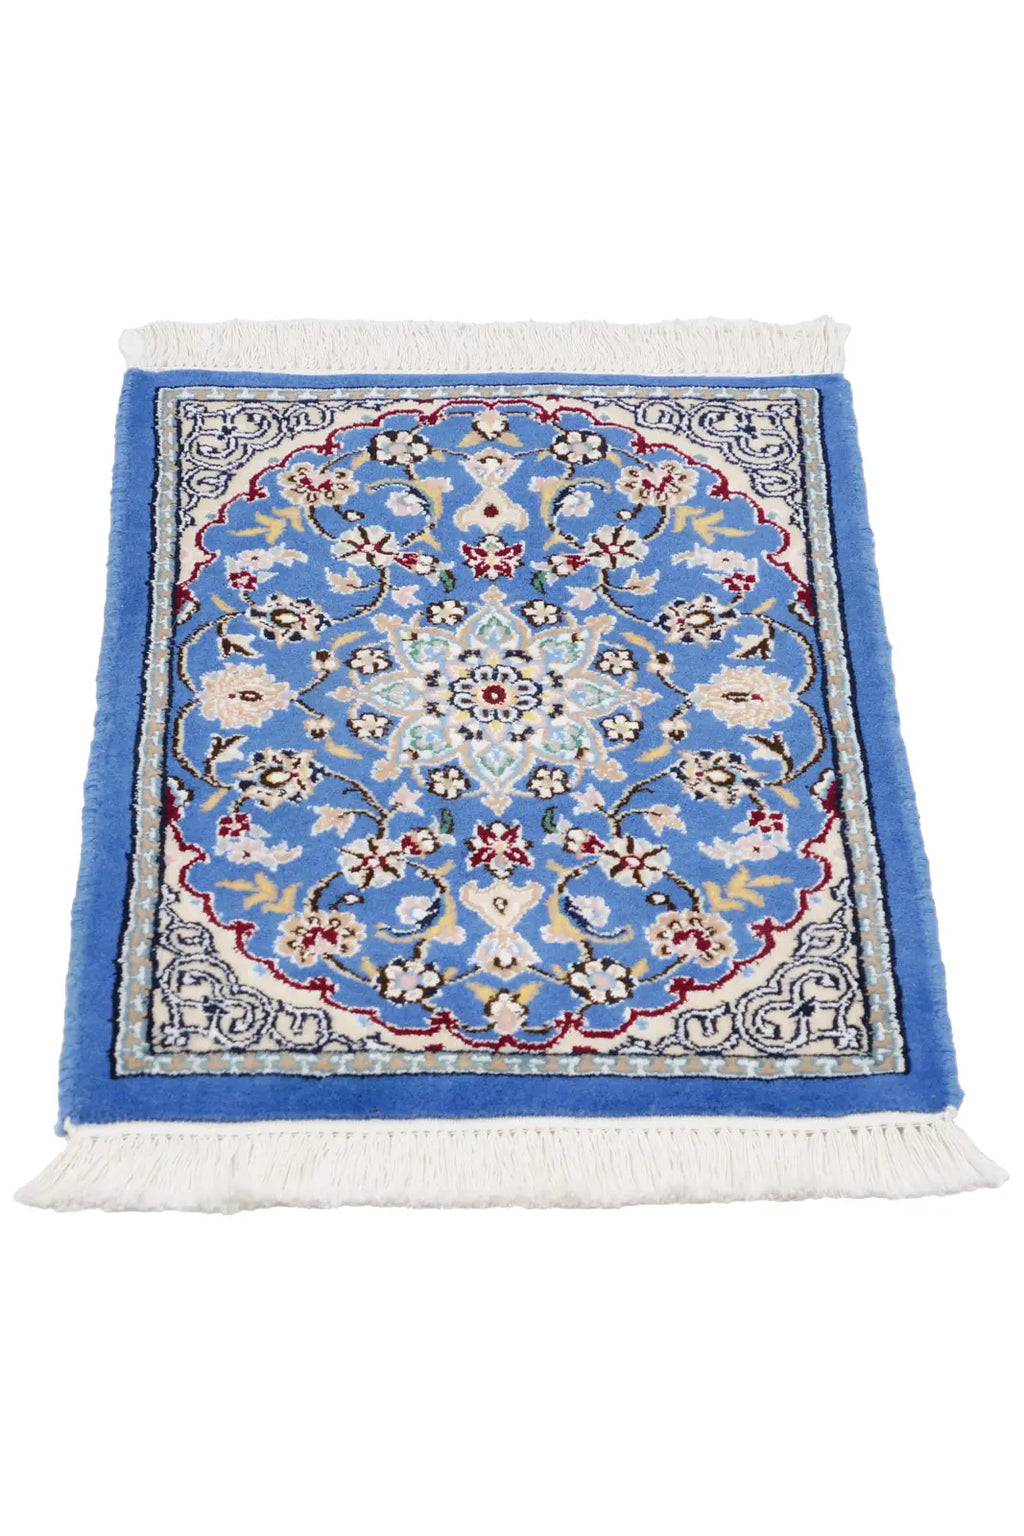 ナイン産 手織りペルシャ絨毯(40x60cm)青 ウール&シルク【絨毯専門店】